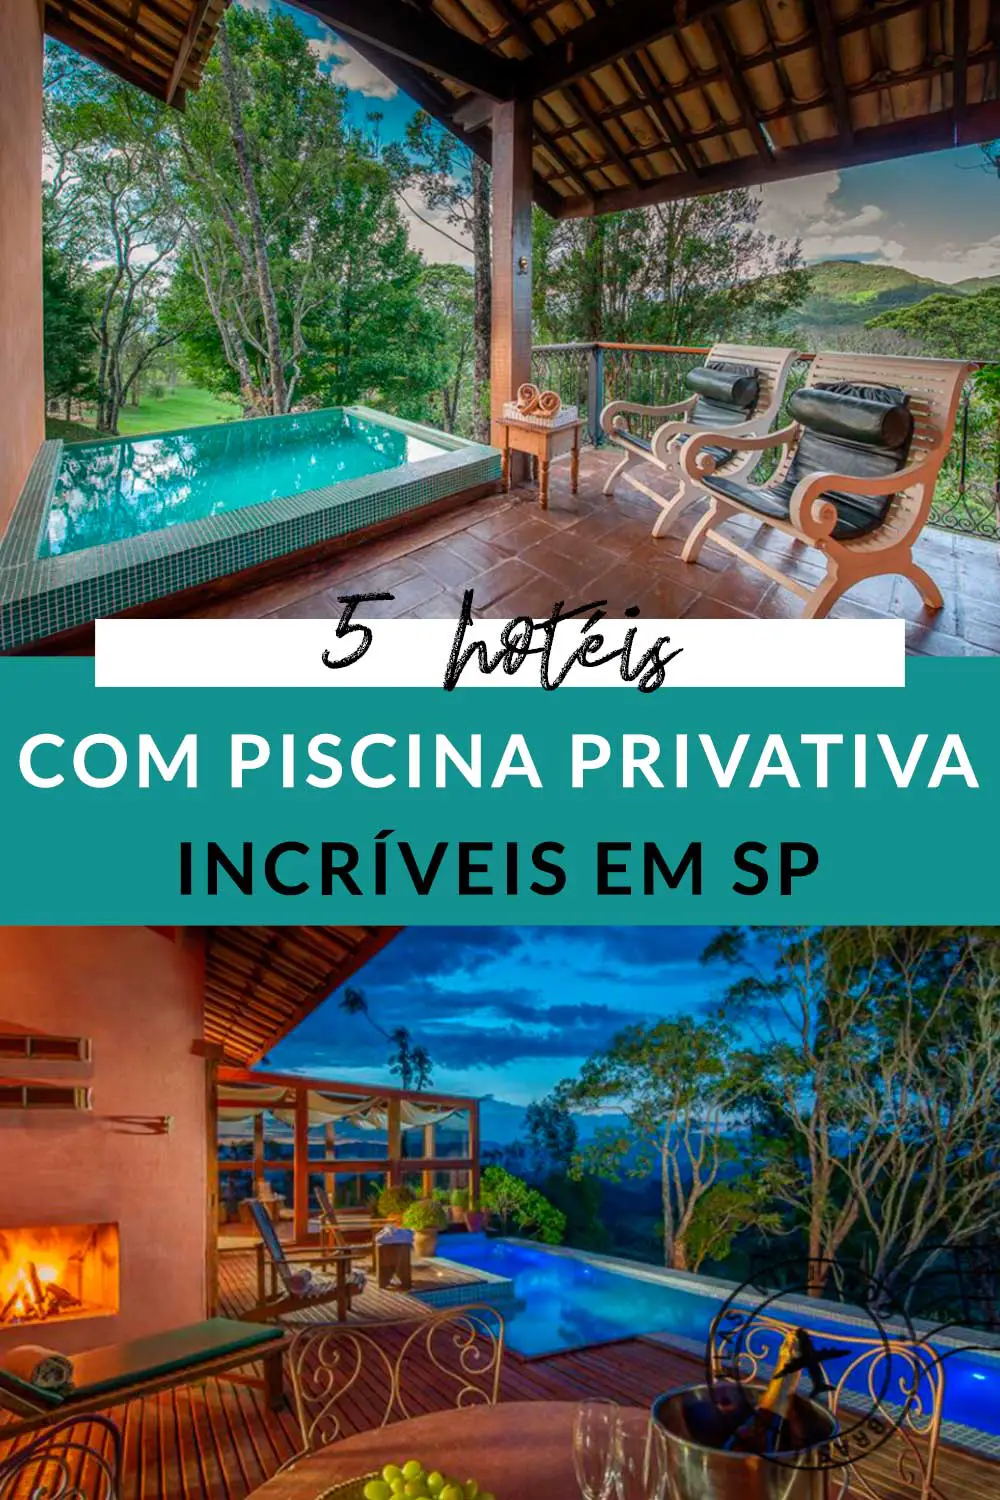 Hotel com piscina privativa em SP